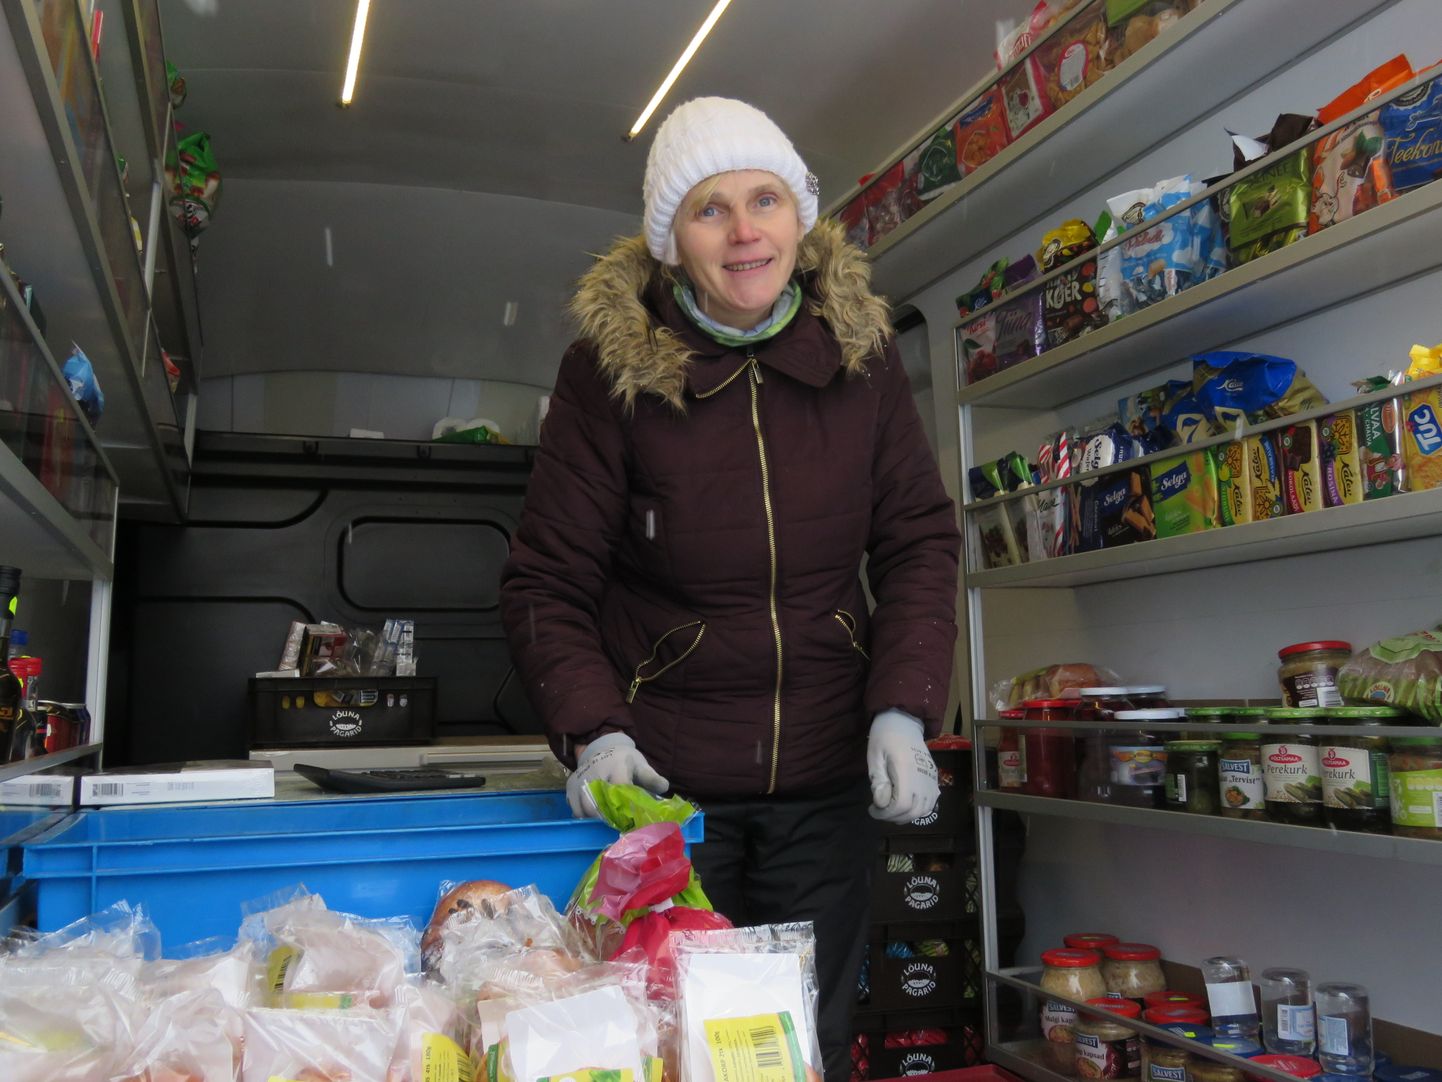 Õie Maiste on Lõuna-Eesti maakondades tegutseva kauplusauto juht ja müüja. Vajadusel ka paljudele sõber, psühholoog, varustaja ning asendamatu inimene juba pikki aastaid.